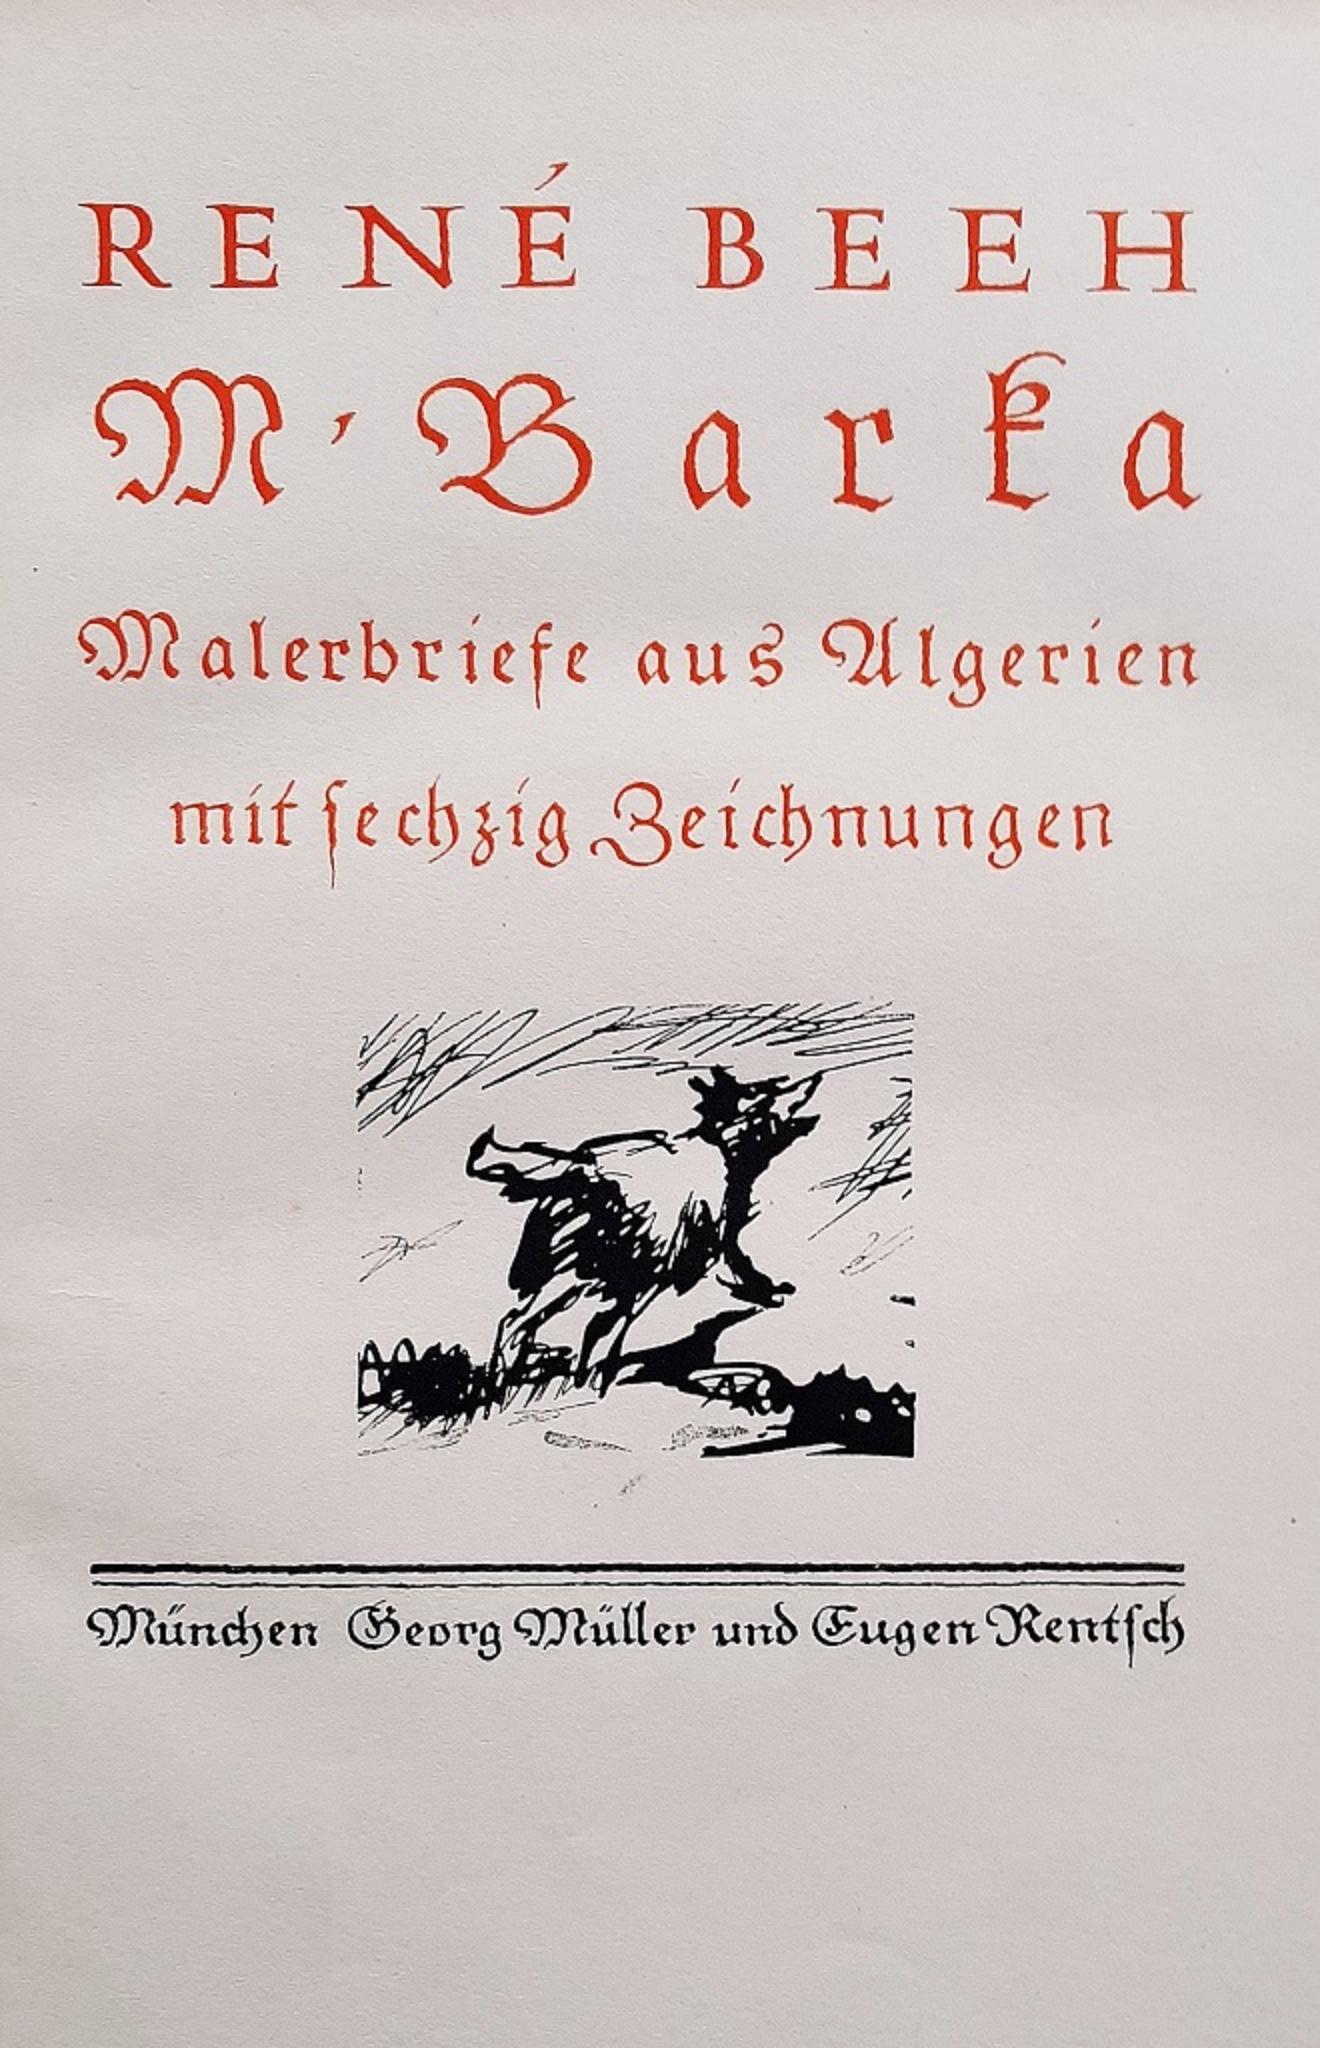 M.Barka ist ein seltenes Originalbuch, das von René Beeh (1886 - 1922) im Jahr 1914 illustriert wurde. 

Original-Erstausgabe. 

Herausgegeben von Georg Muller, Eugen Rentsch, München.

1200 nummerierte Exemplare.

Format: in 4°.

Das Buch umfasst